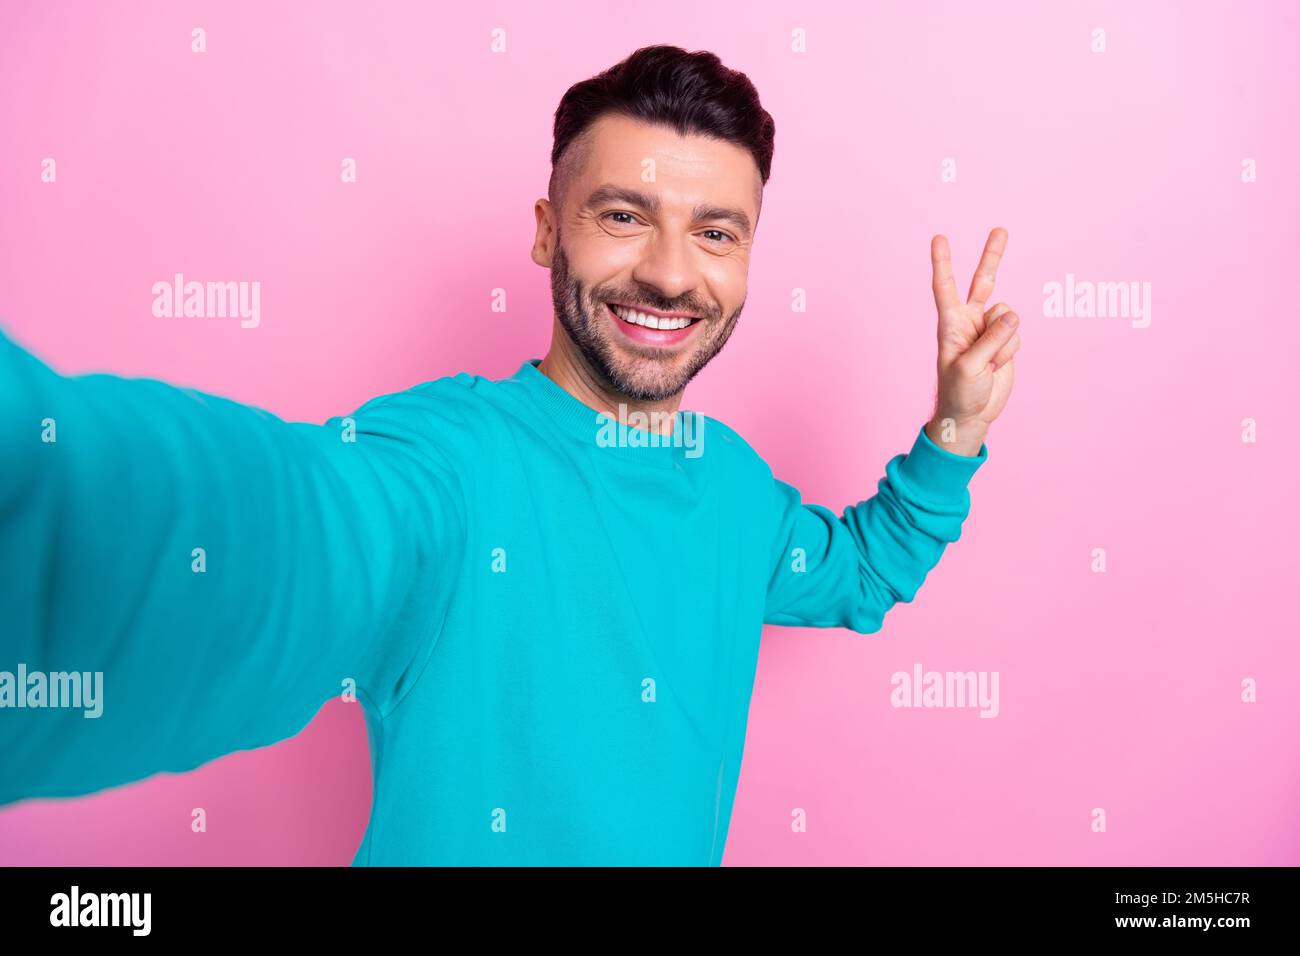 Selfie Nahaufnahme Porträtfoto von attraktivem jungen, gutaussehenden Mann brauner Bart Make Shot Show V-Zeichen Frieden isoliert auf pinkfarbenem Hintergrund Stockfoto